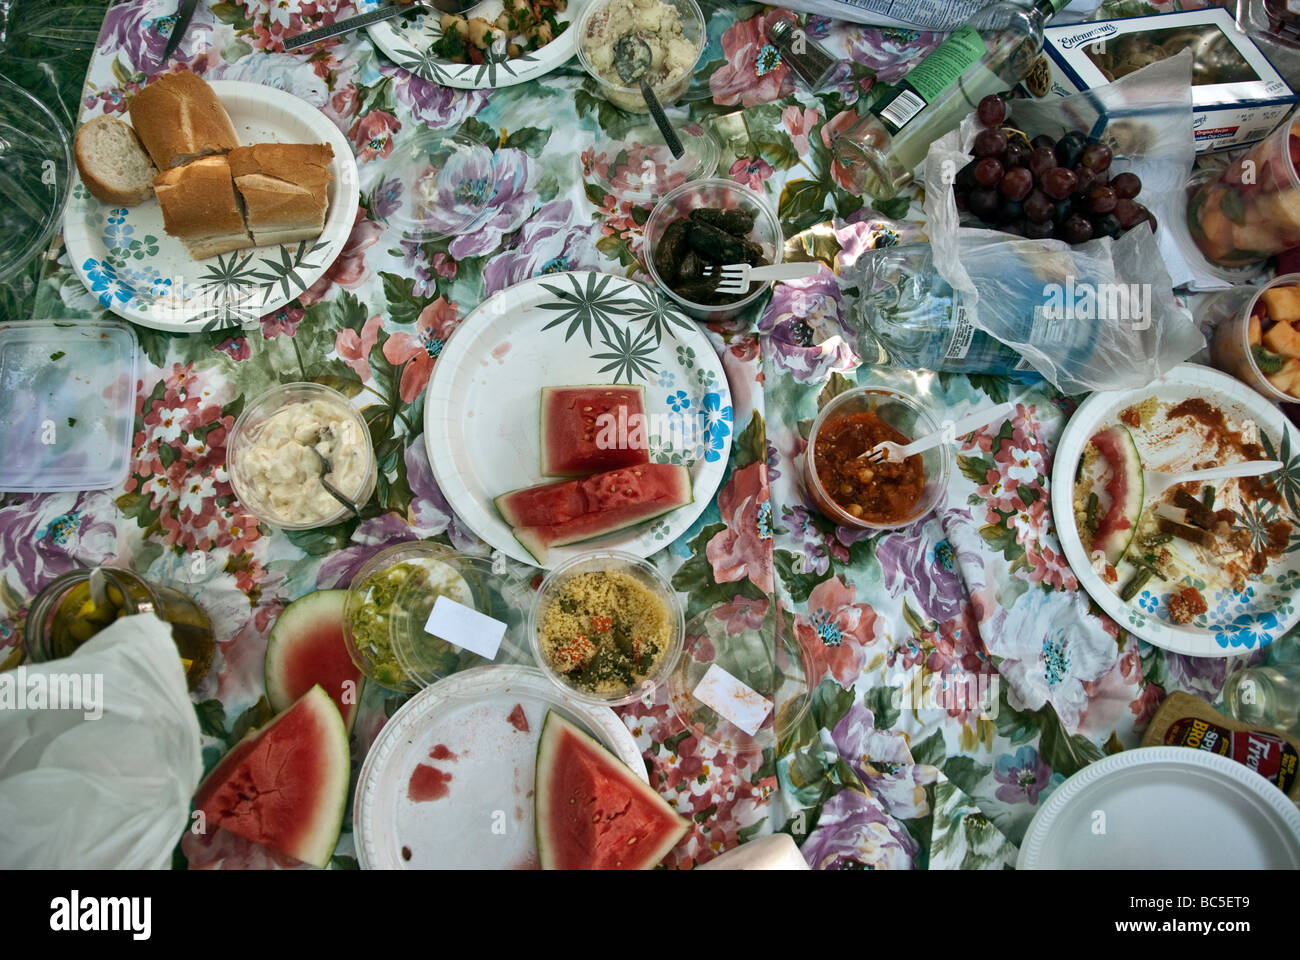 Das Essen bei einem Picknick einschließlich Wassermelone, knusprigem Brot, Guacamole, Oliven, Gurken- und Kartoffelsalat, verteilt über eine Rose drucken Tuch Stockfoto